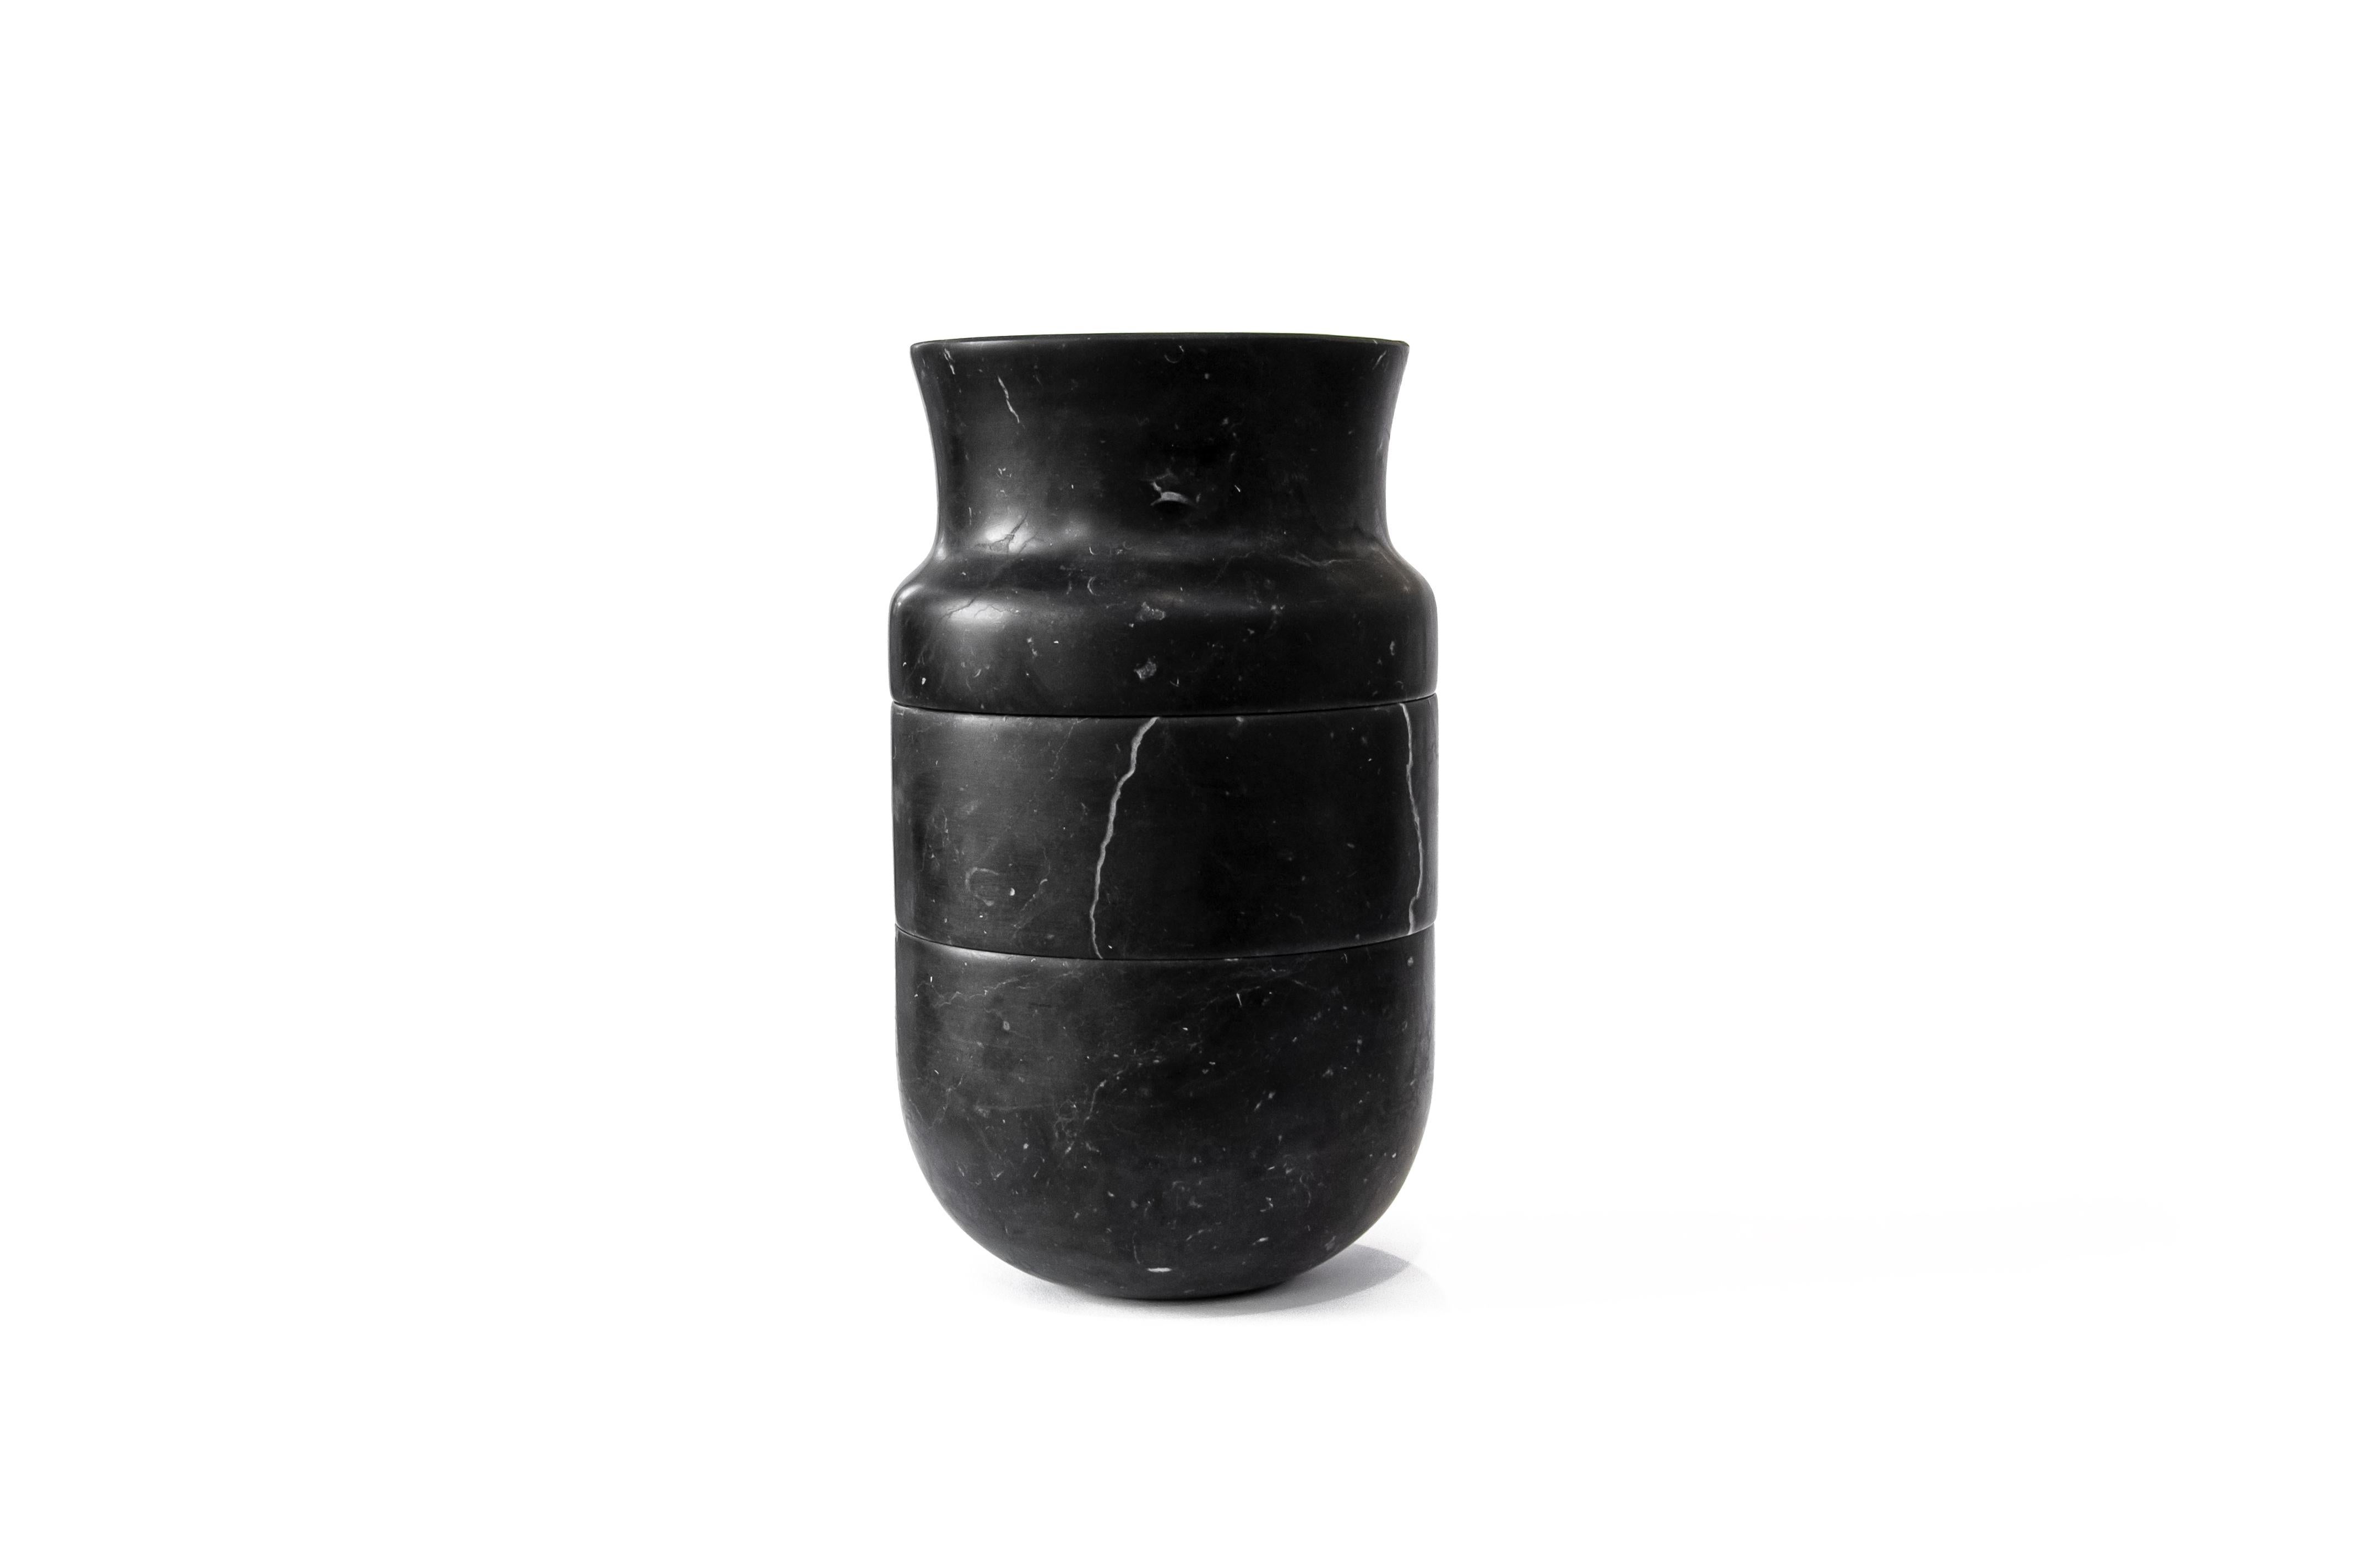 Dreiteilige Vase aus weißem Carrara- und/oder schwarzem Marquina-Marmor, satiniert oder poliert.

Form und Farbe nach Ihrem Geschmack.

Diese Vase wurde in Collaboration mit Annick L. Petersen hergestellt. Jedes Stück ist ein Unikat (jeder